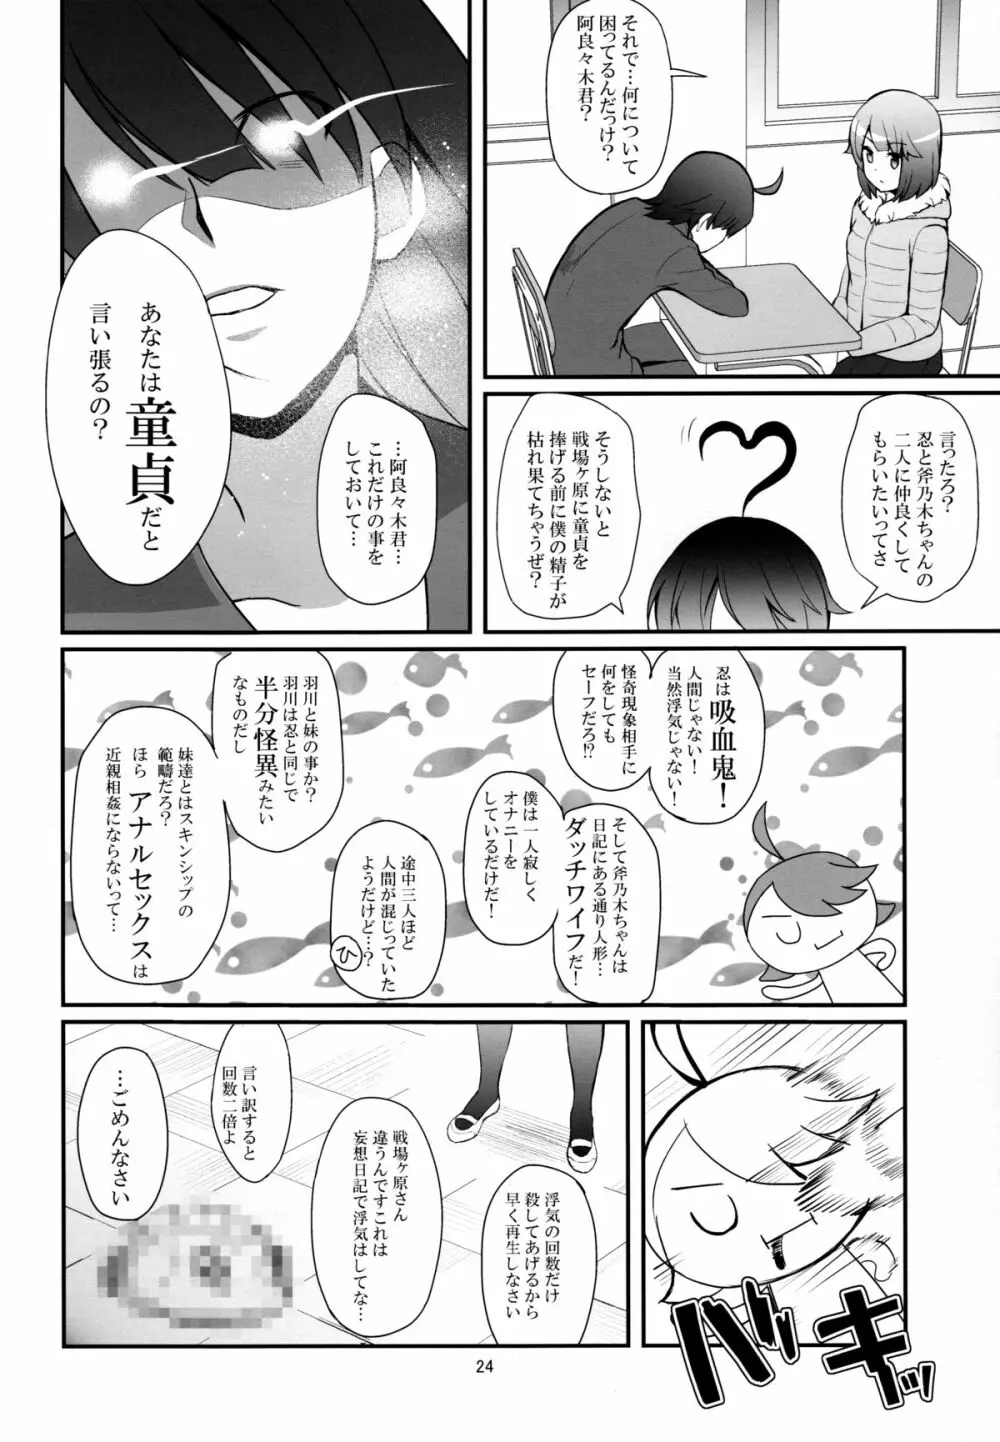 パチ物語 Part10 こよみダイアリー 24ページ